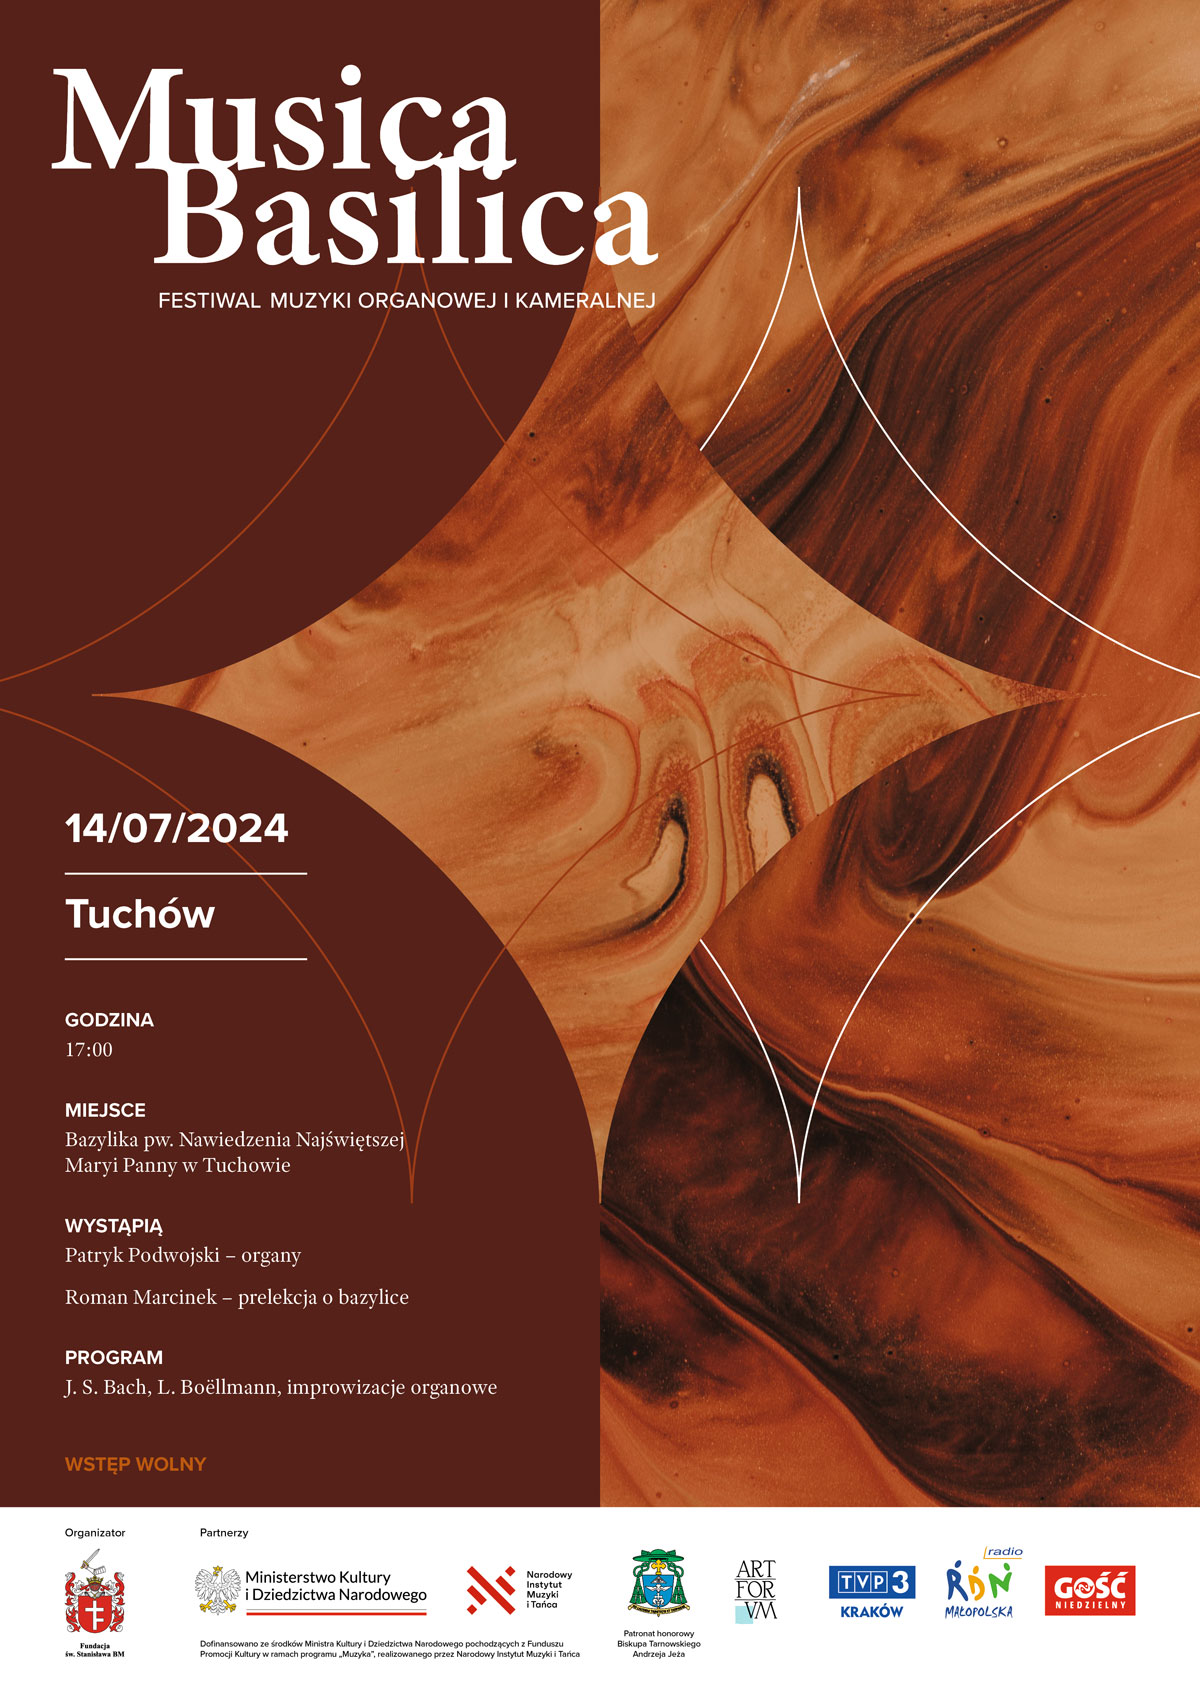 Festiwal Muzyki Organowej i Kameralnej “Musica Basilica” w Sanktuarium w Tuchowie 14.07.2024